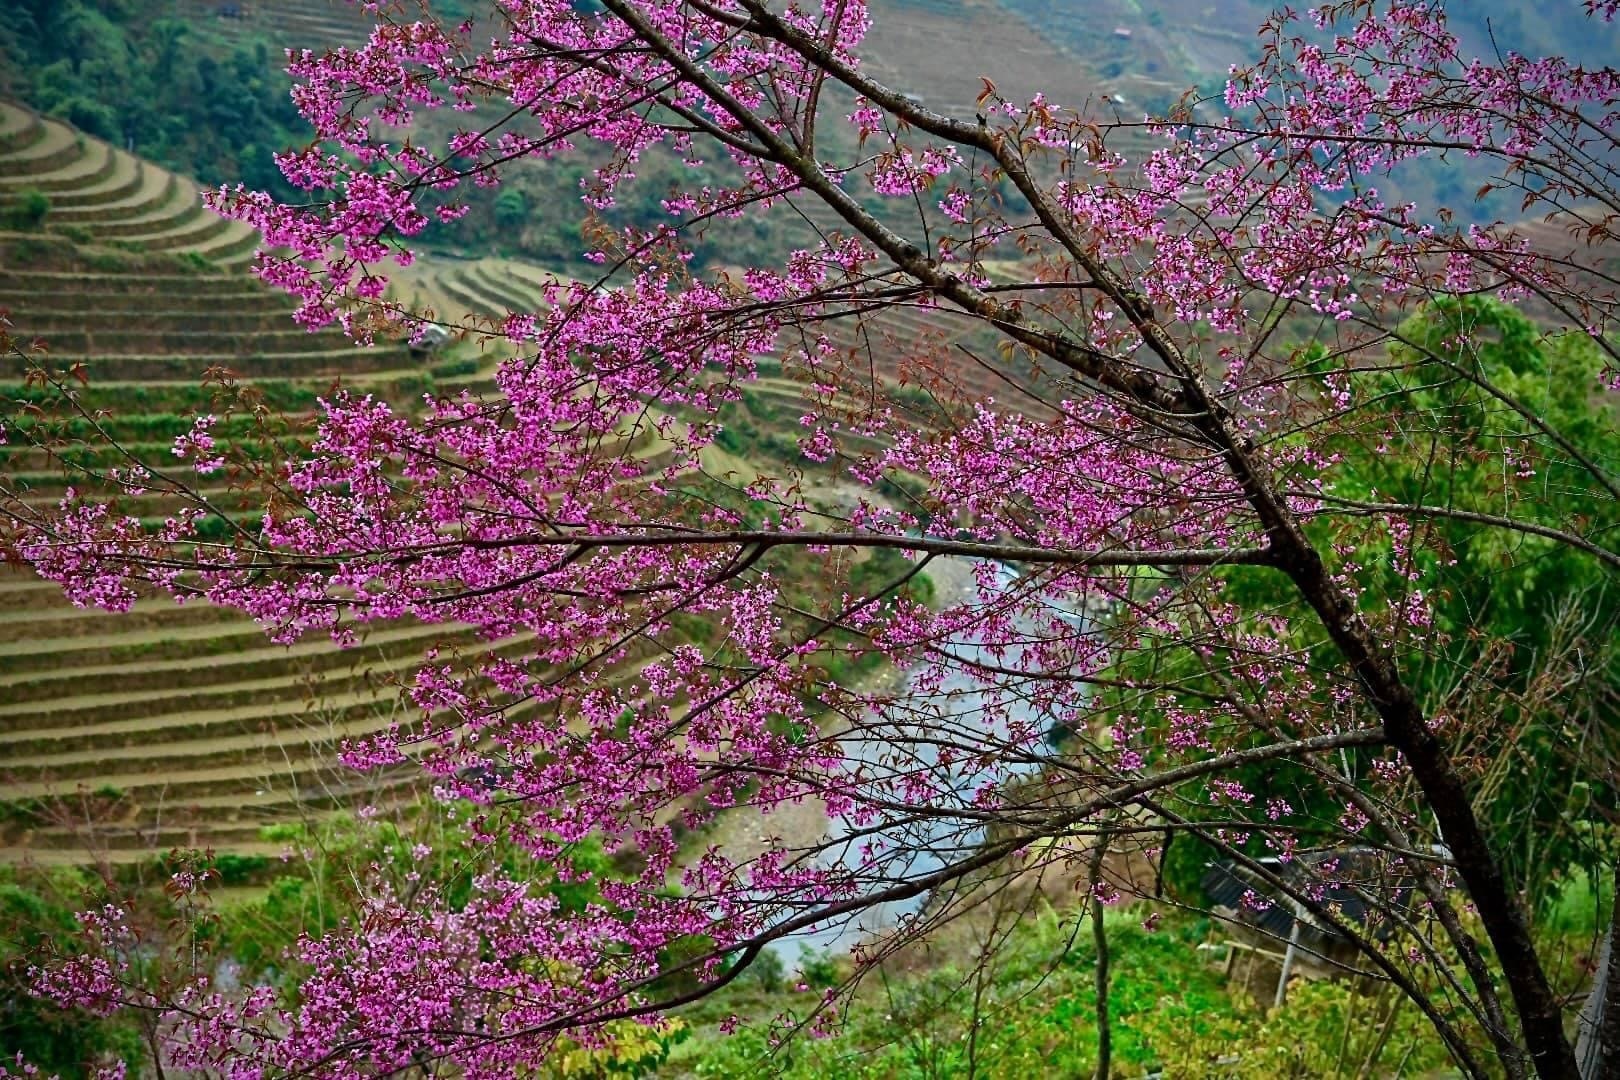 Chiêm ngưỡng sắc hoa tớ dày nhuộm hồng núi rừng Mù Cang Chải - Ảnh 2.